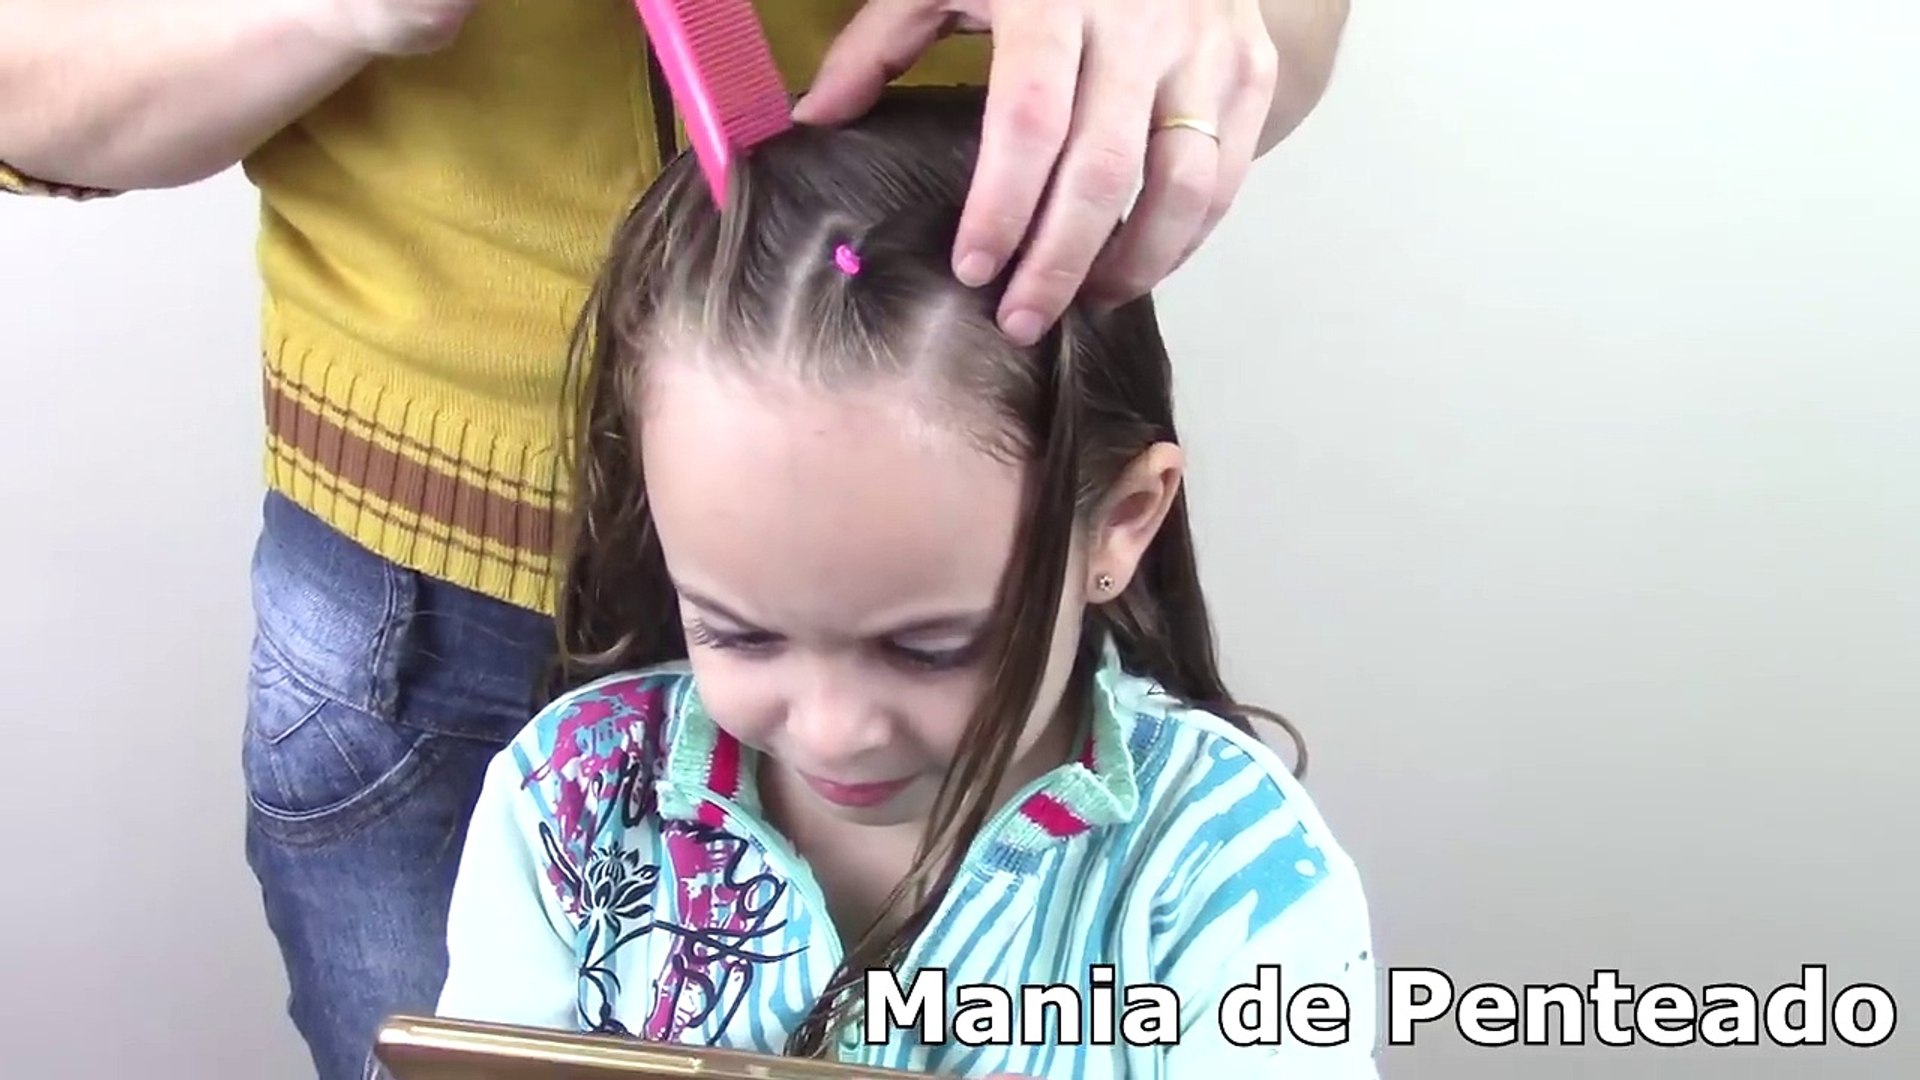 Penteado Infantil fácil com ligas e trança bolha - Vídeo Dailymotion